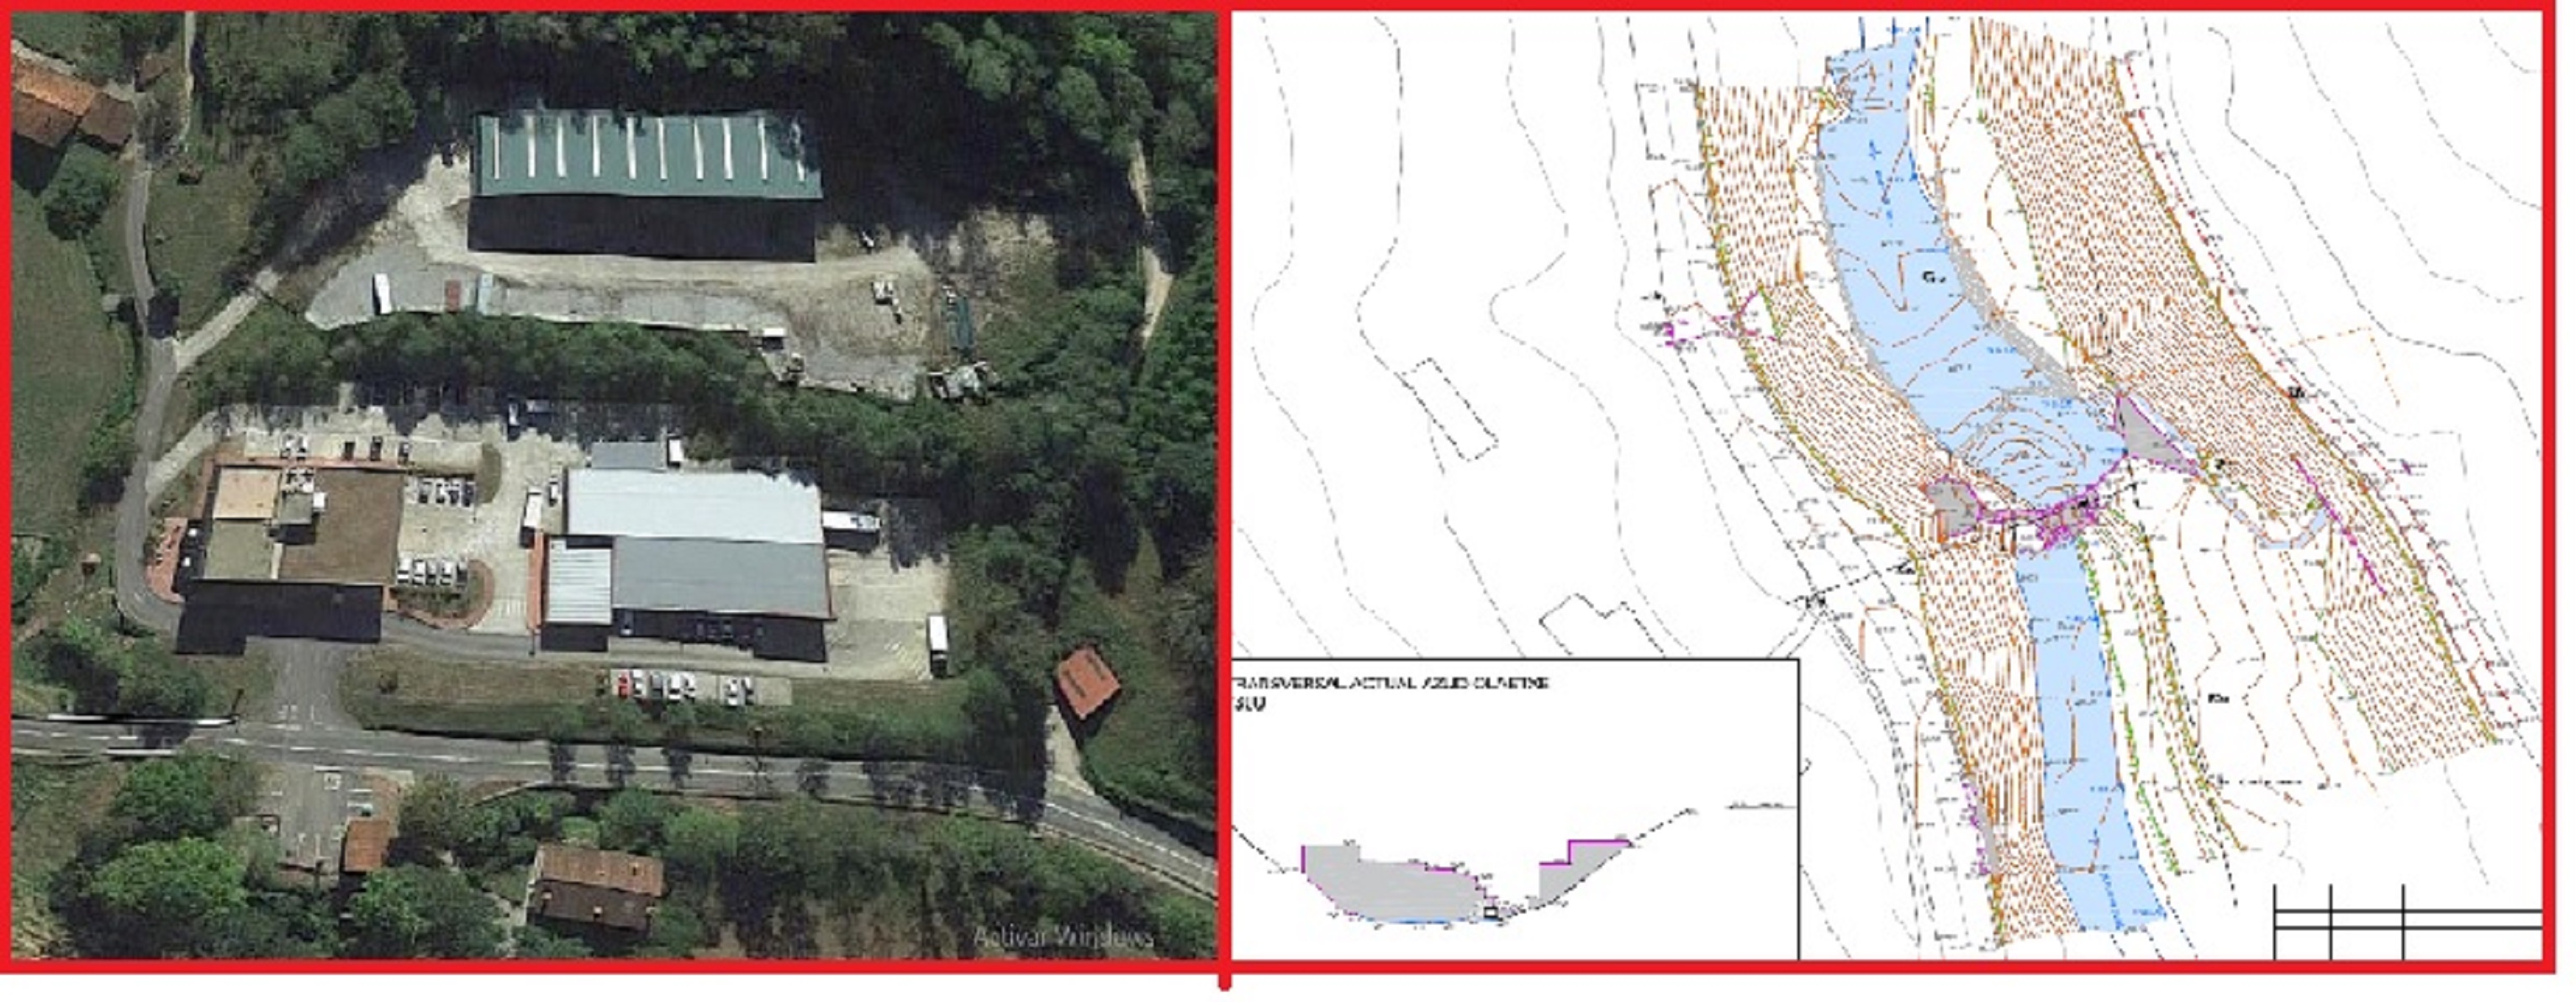 Publicados los documentos de la Evaluación Ambiental correspondientes al proyecto de permeabilización del azud Olaetxe en el río Oiartzun y a la 2ª Modificación Puntual del Plan General de Ordenación Urbana Zaldibia en el ámbito Olaeta Agroaldea